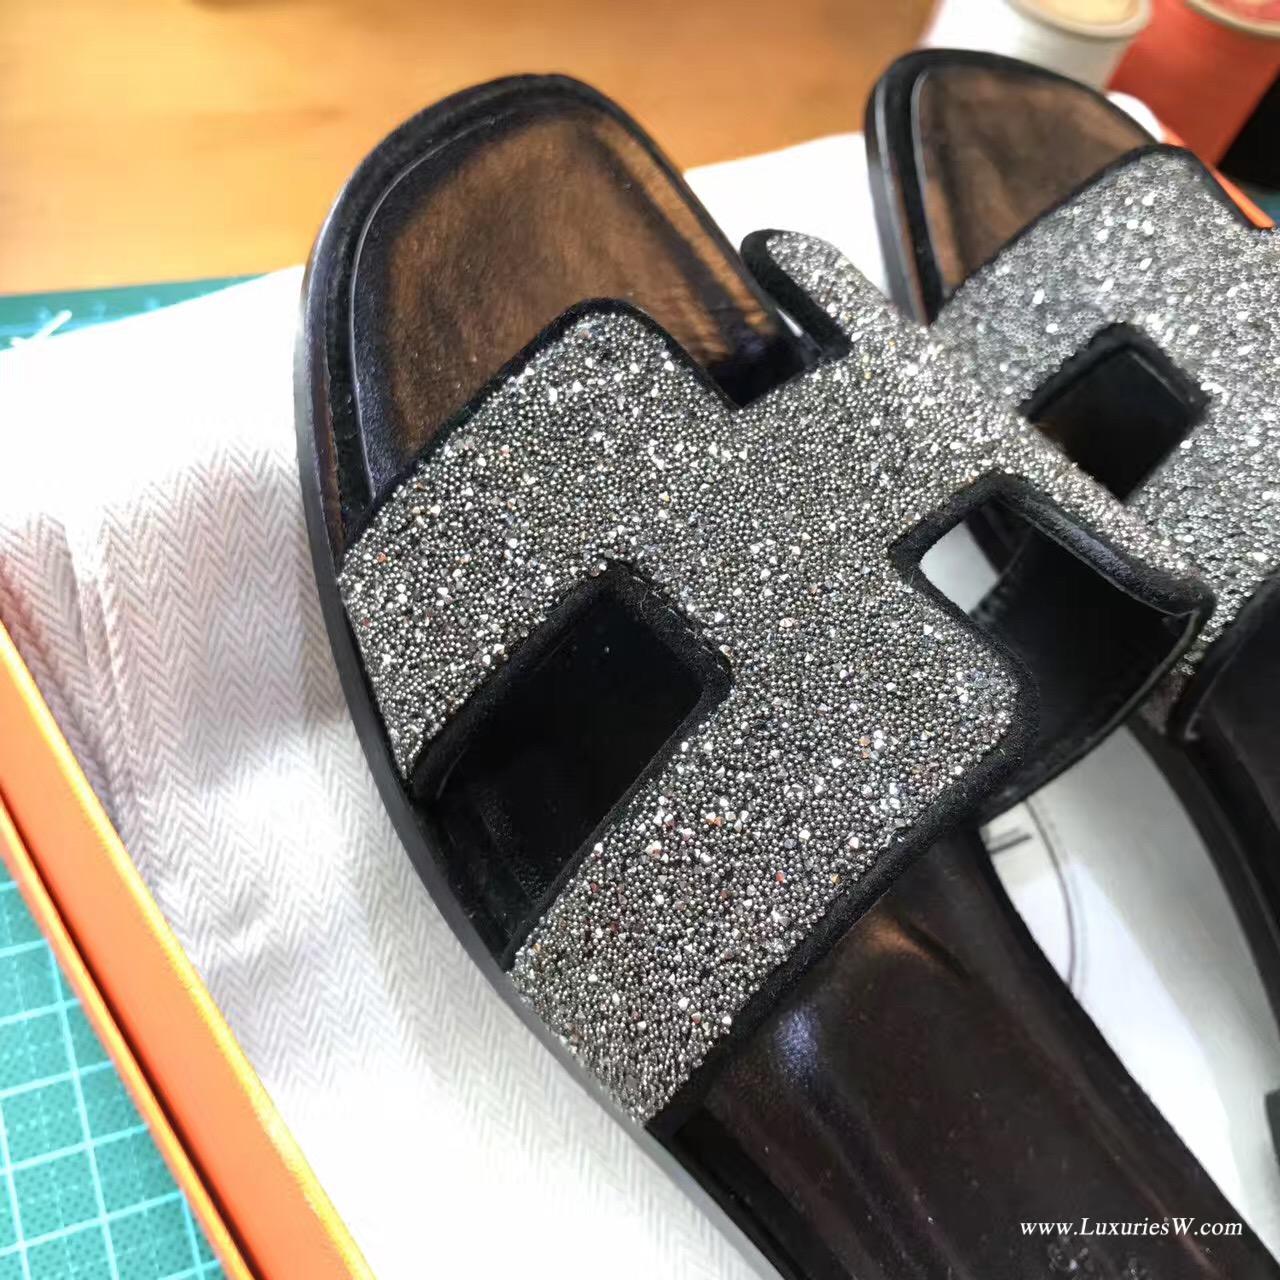 愛馬仕Hermes 經典款女士涼鞋 H型拖鞋 黑色鉆 亮晶晶中跟 平底涼拖鞋